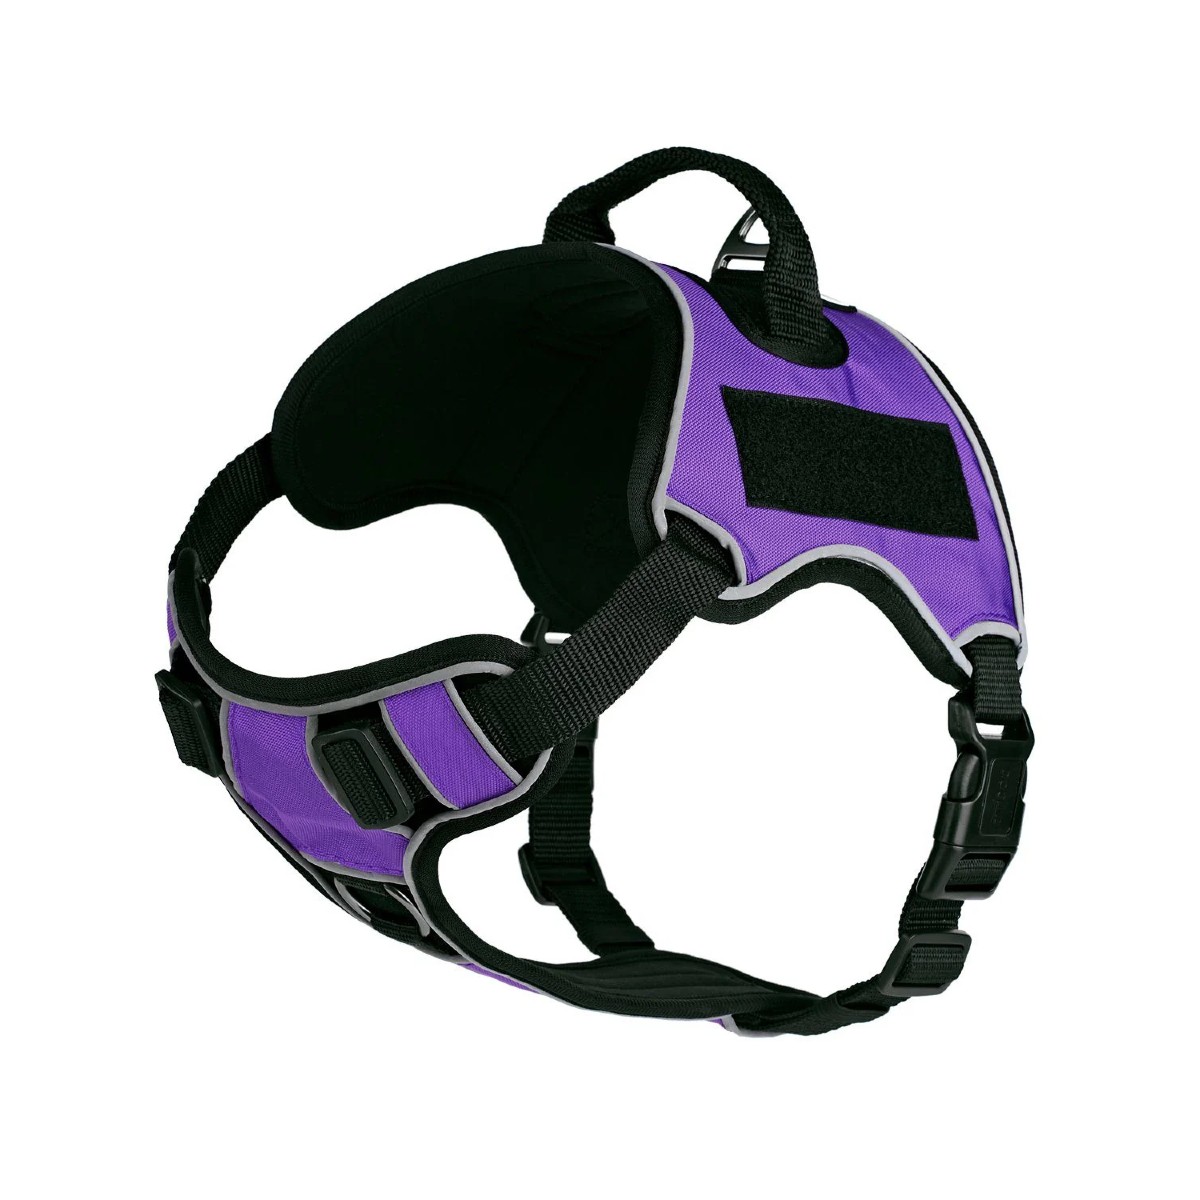 Dogline Quest Multipurpose No Pull Dog Harness - Purple